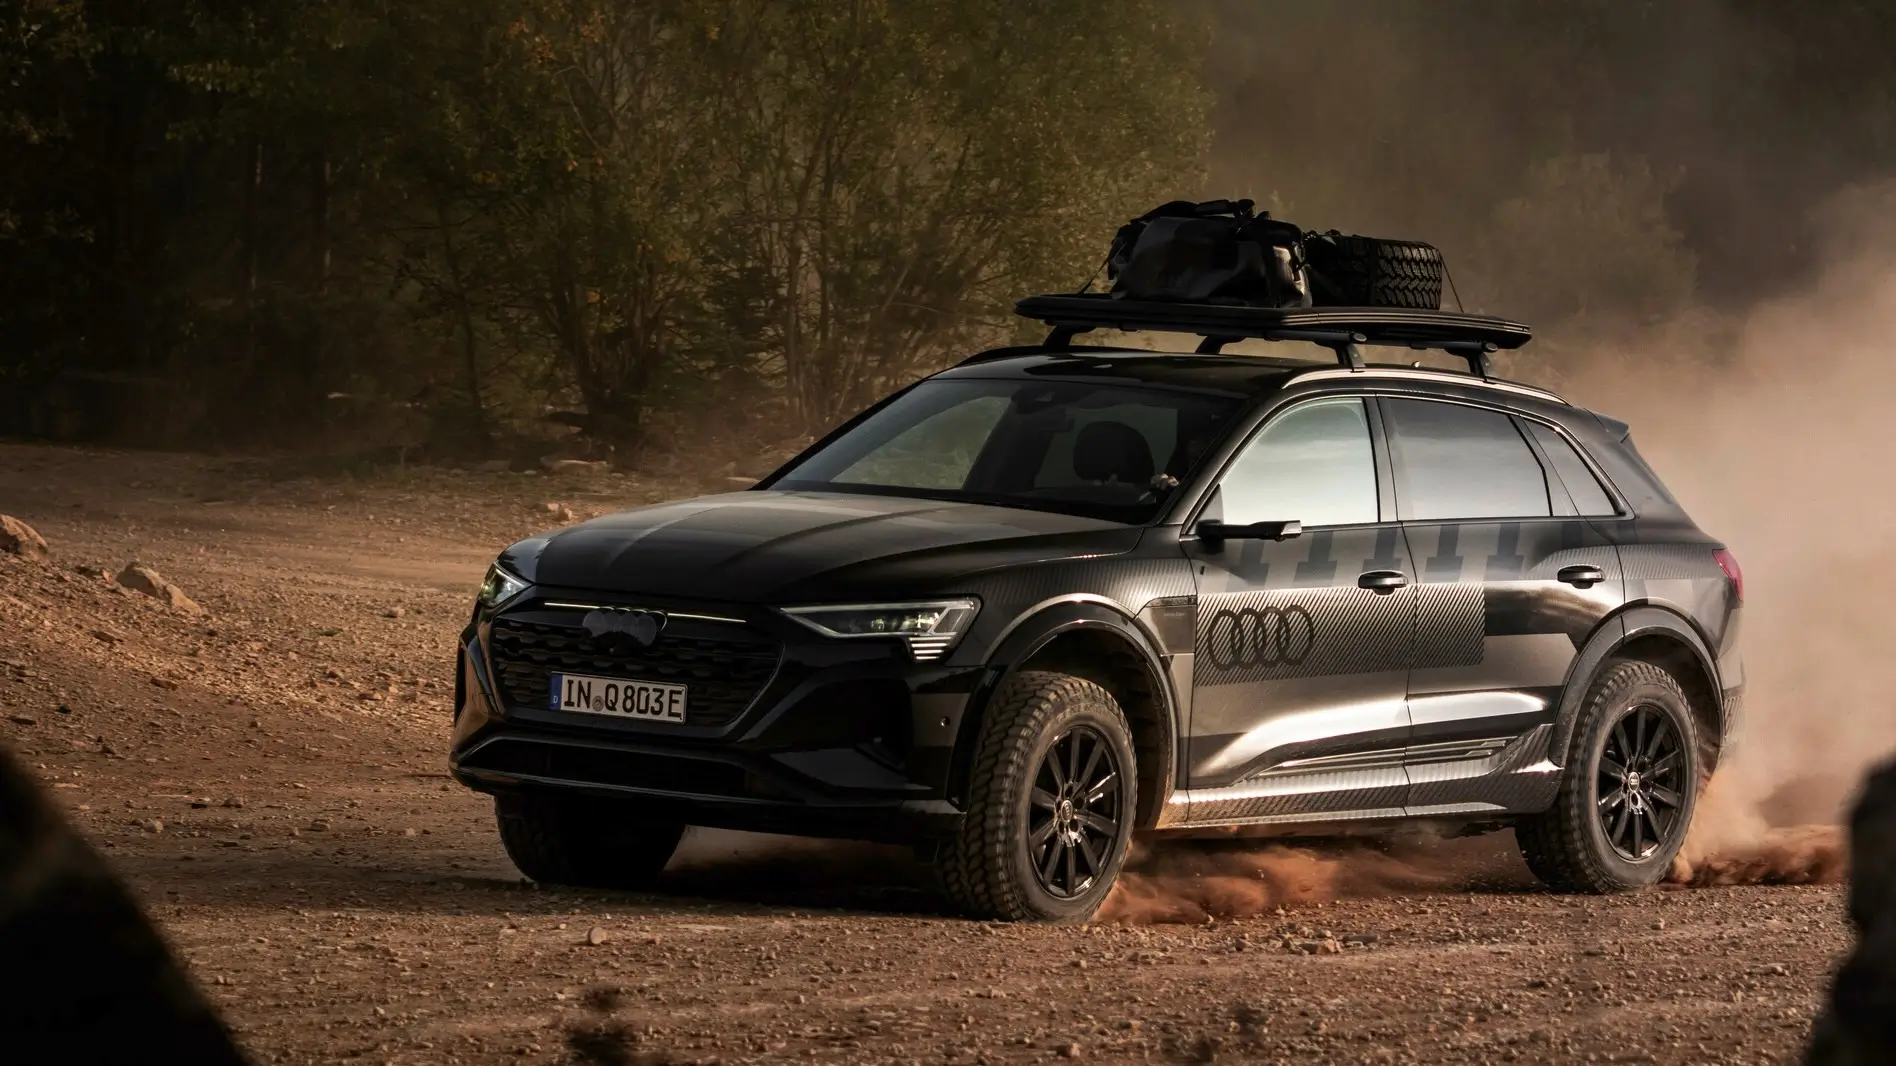 Audi inspira-se no Dakar e faz Q8 e-tron mais capaz em fora de estrada